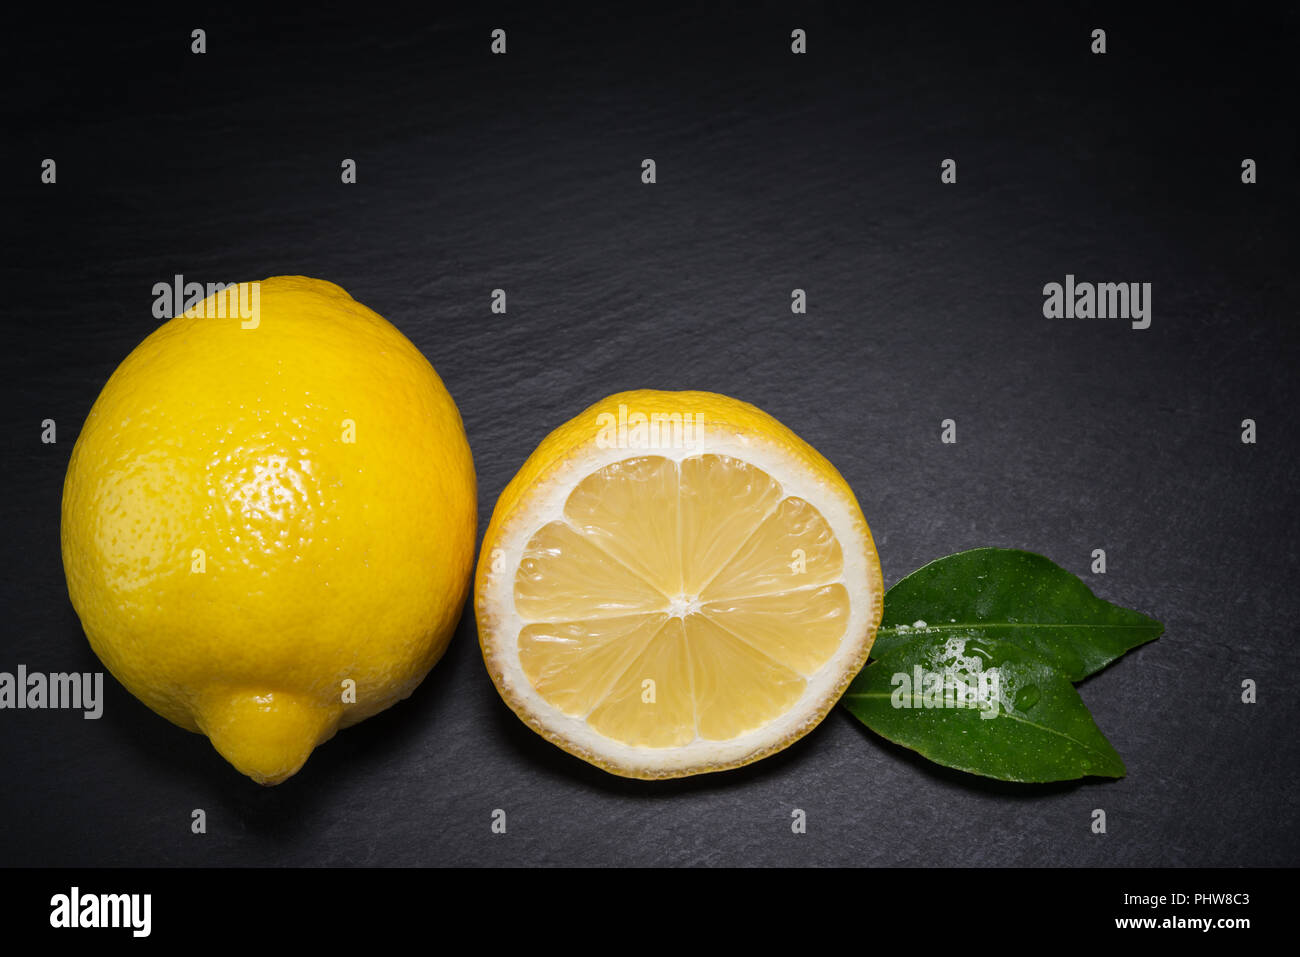 groupe of fresh lemons Stock Photo